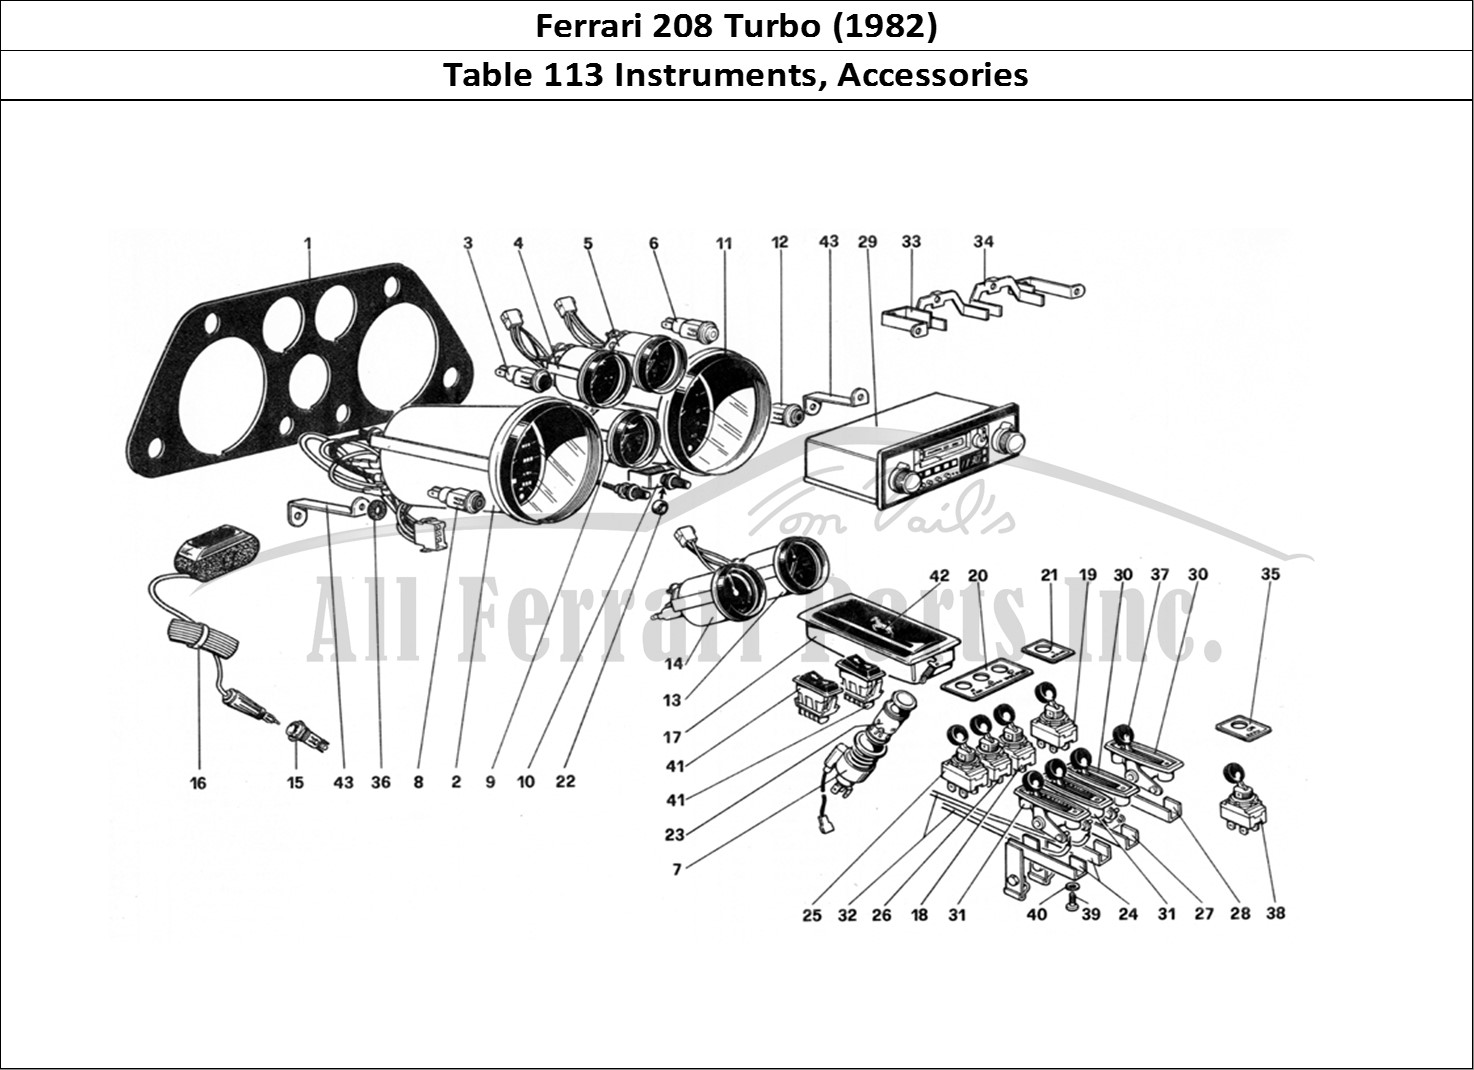 Ferrari Parts Ferrari 208 Turbo (1982) Page 113 Instruments and Accessori